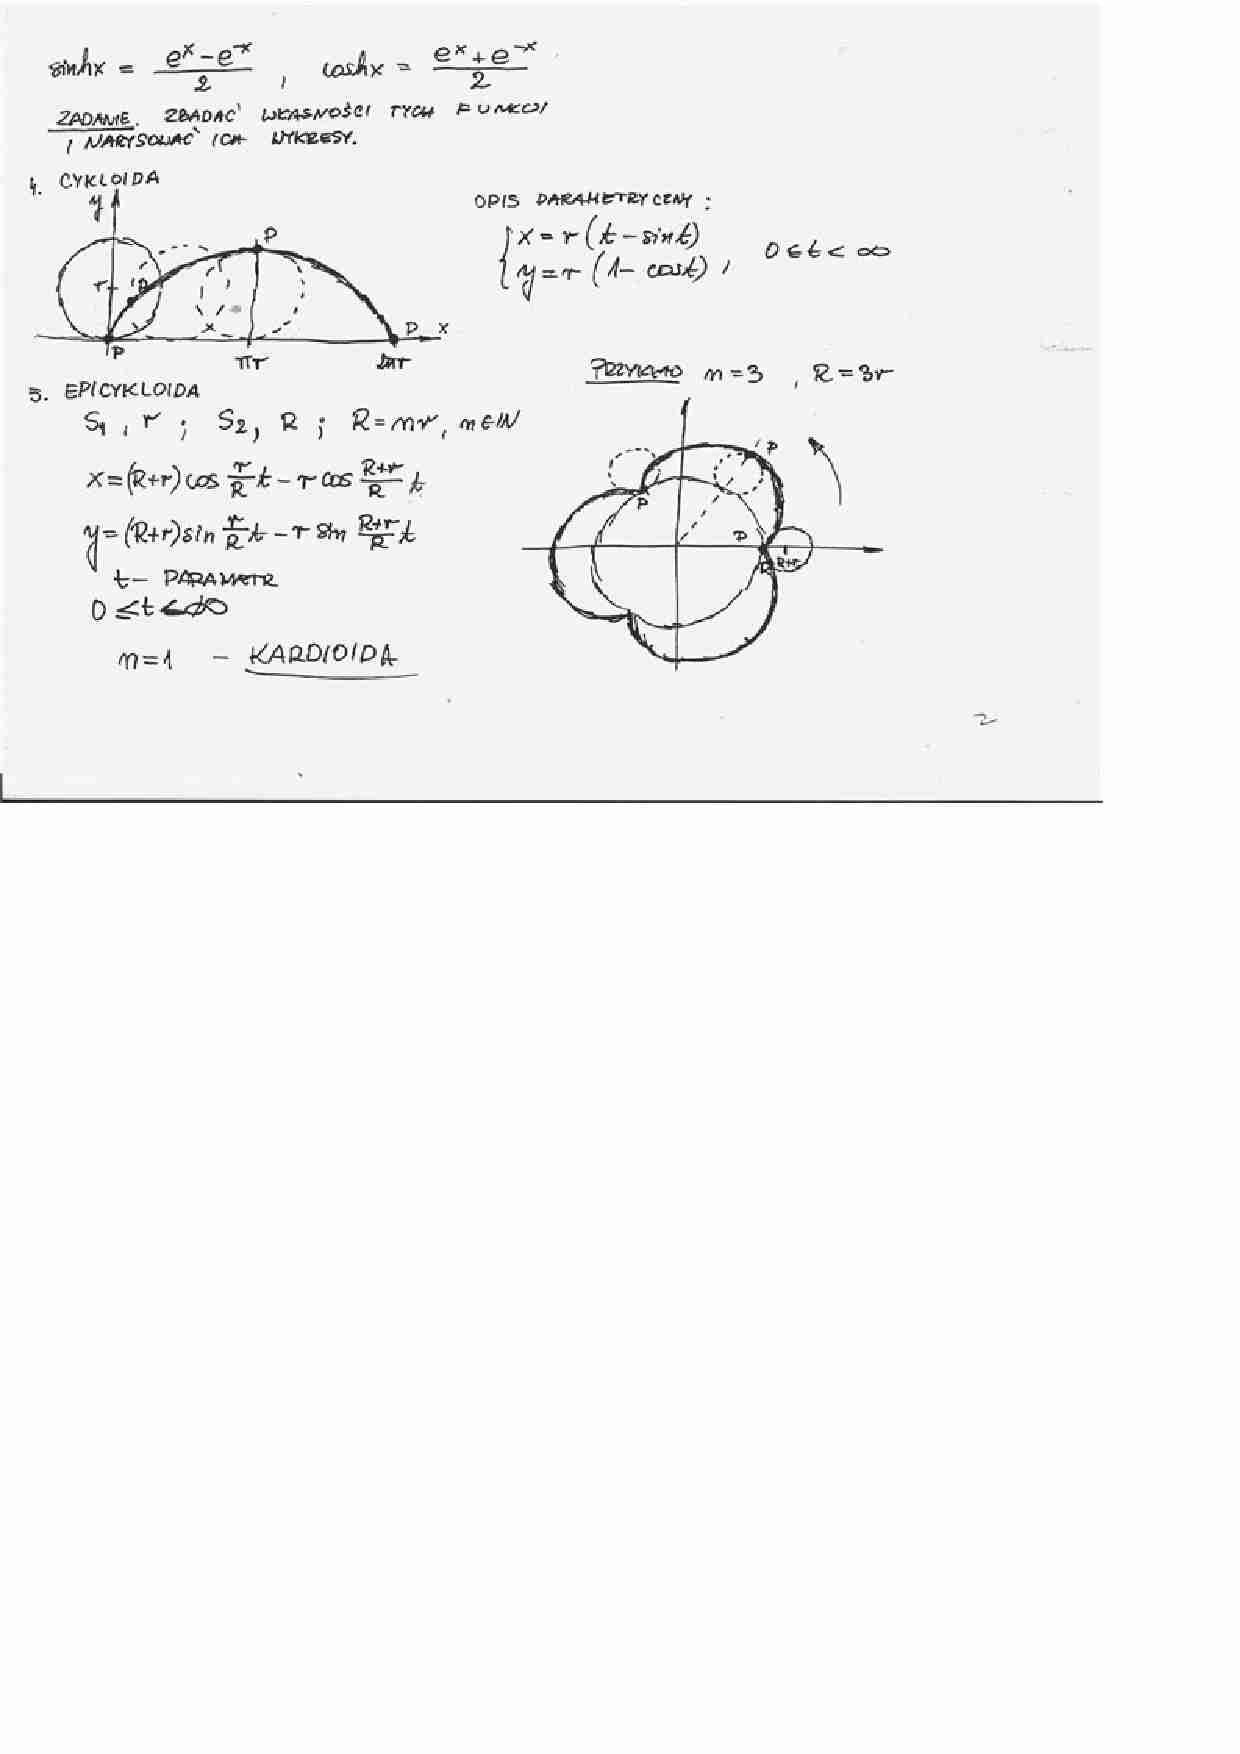 Opis parametryczny - wykład9 - strona 1